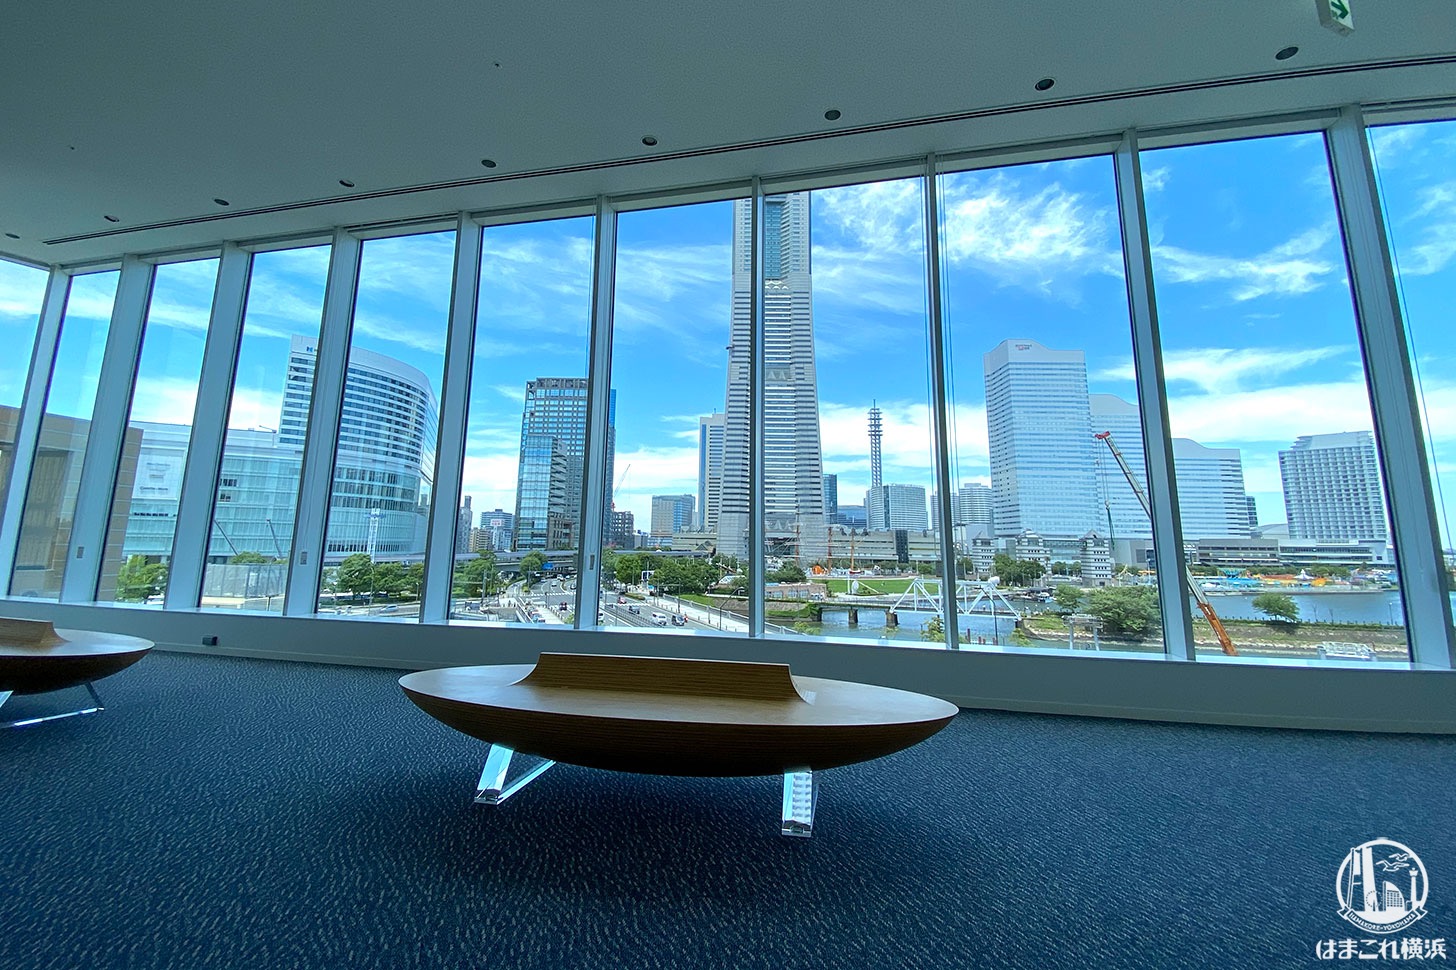 横浜市庁舎「ラウンジ」から見た景色